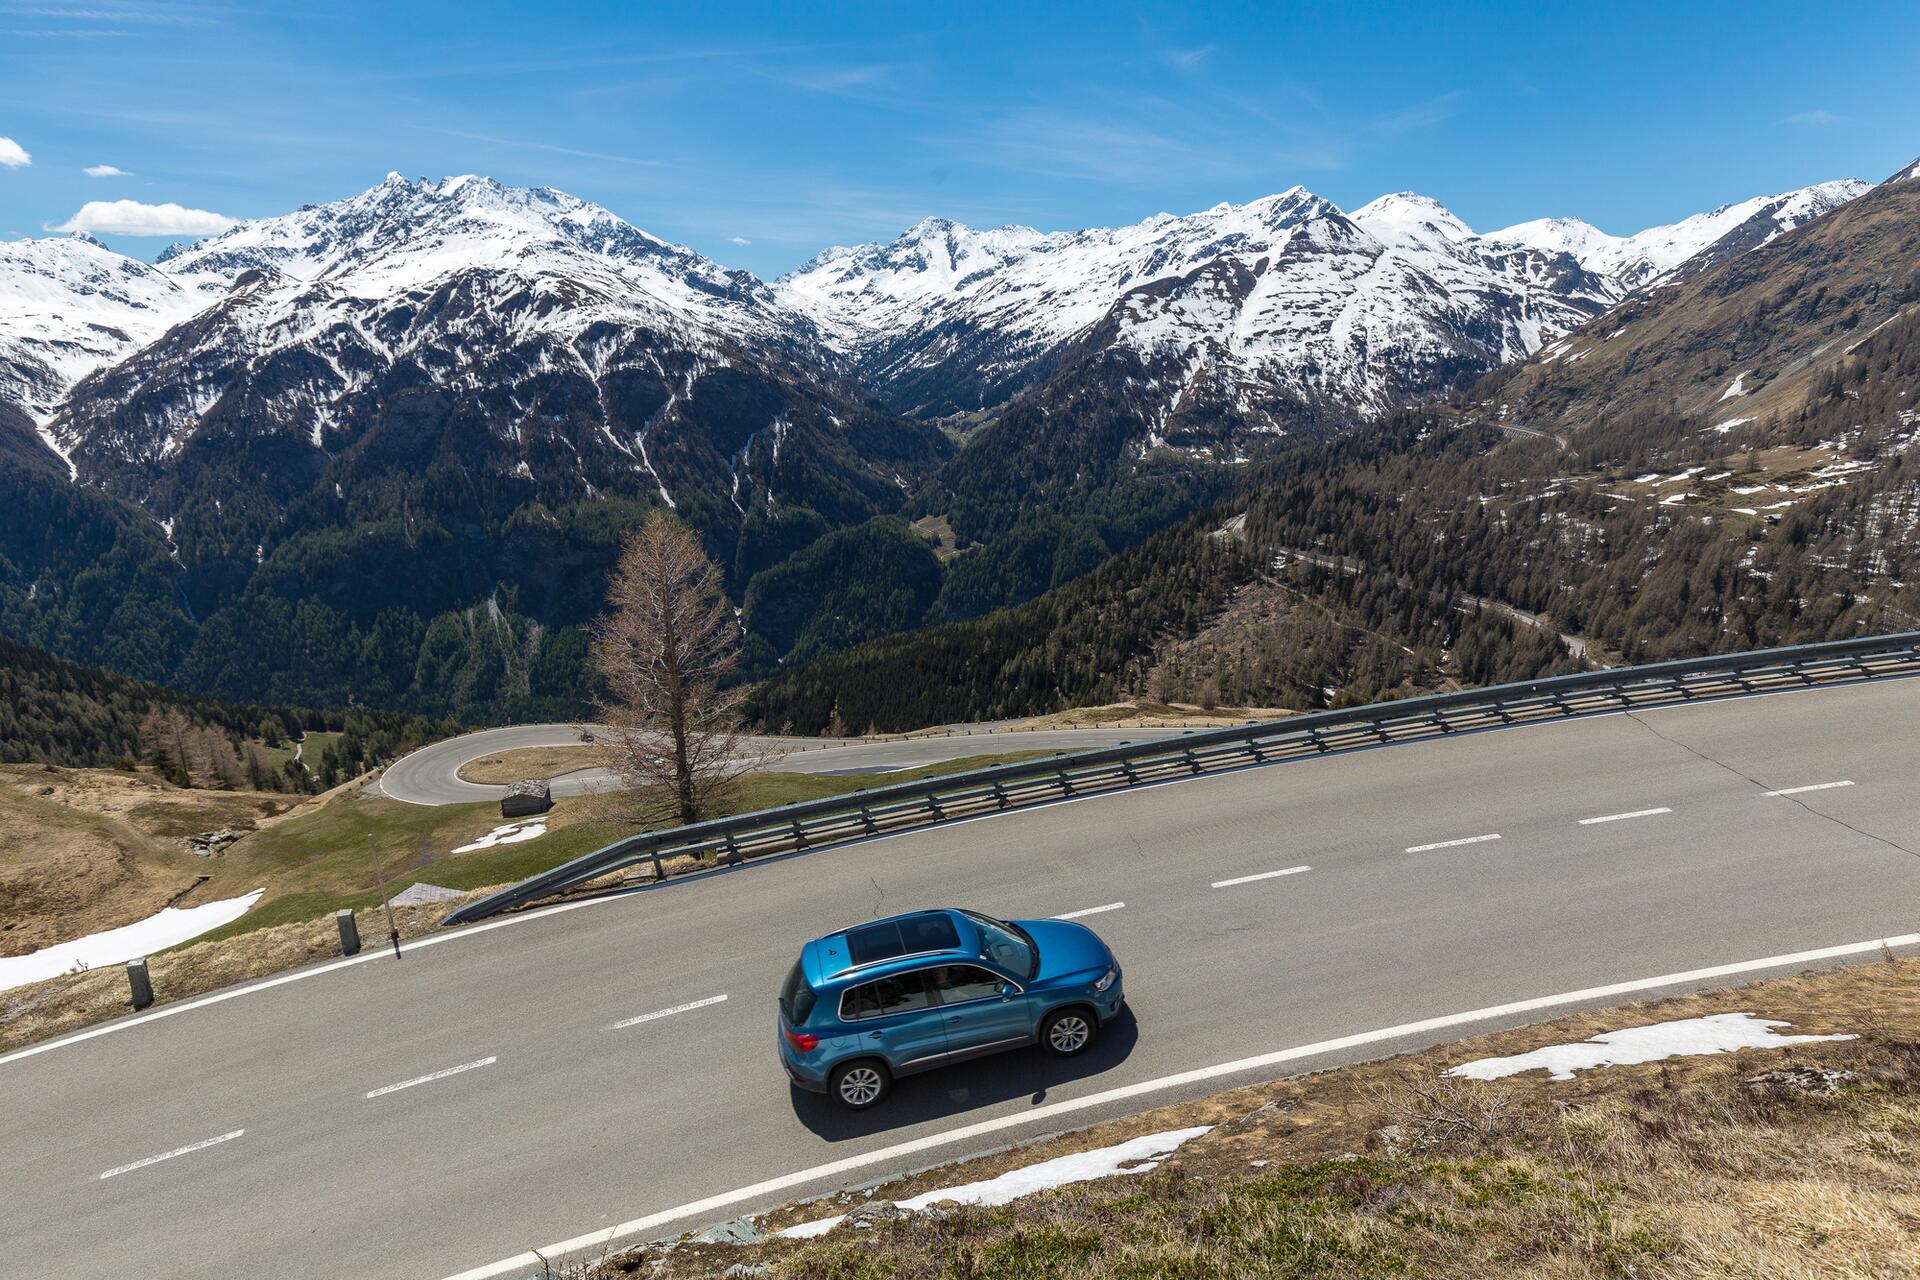 Za překročení rychlosti bude v Rakousku hrozit zabavení auta